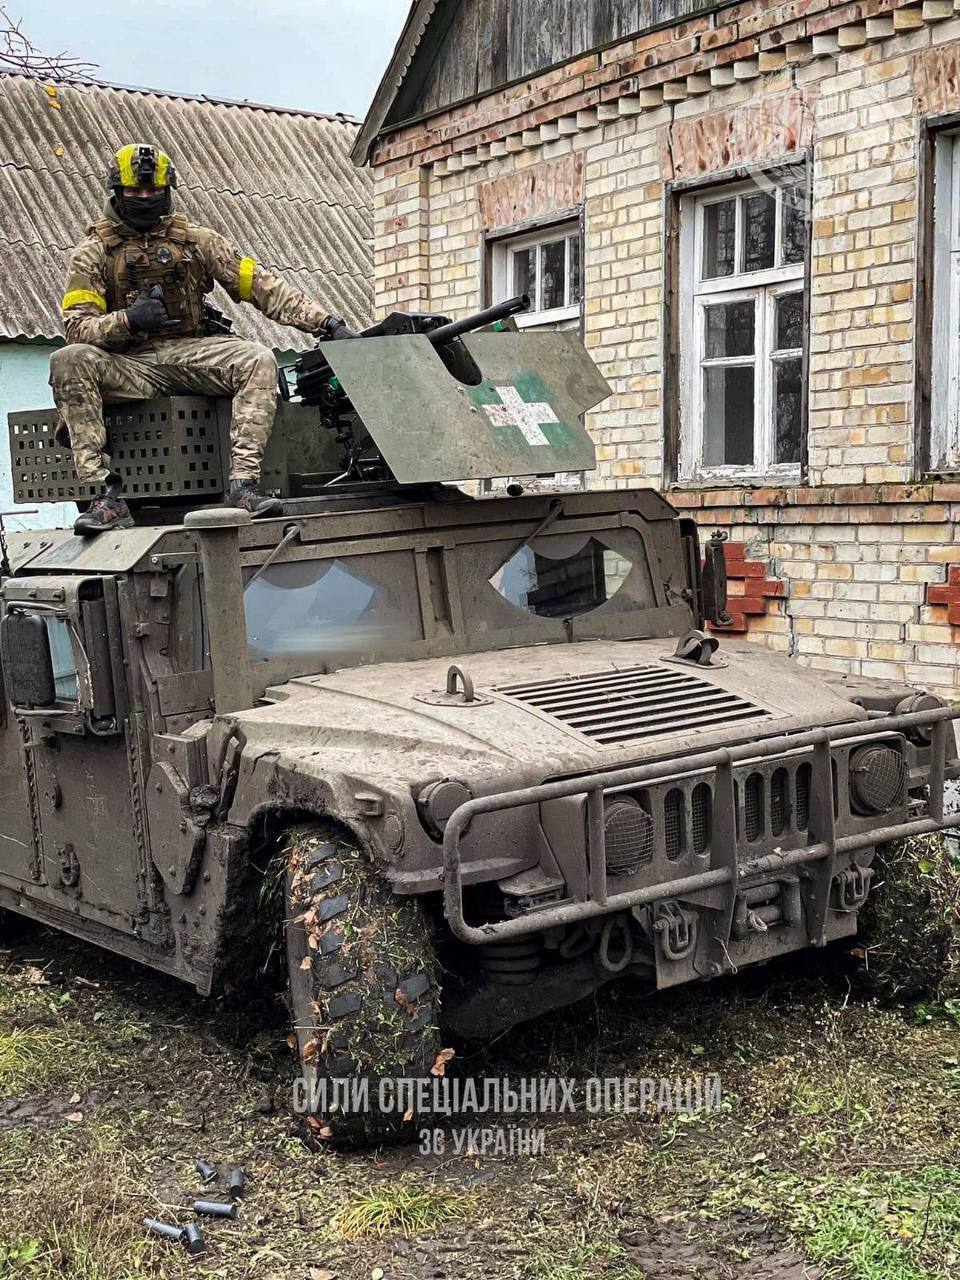 Силы специальных операций - Телеграмм сил специальных операций - война в Украине